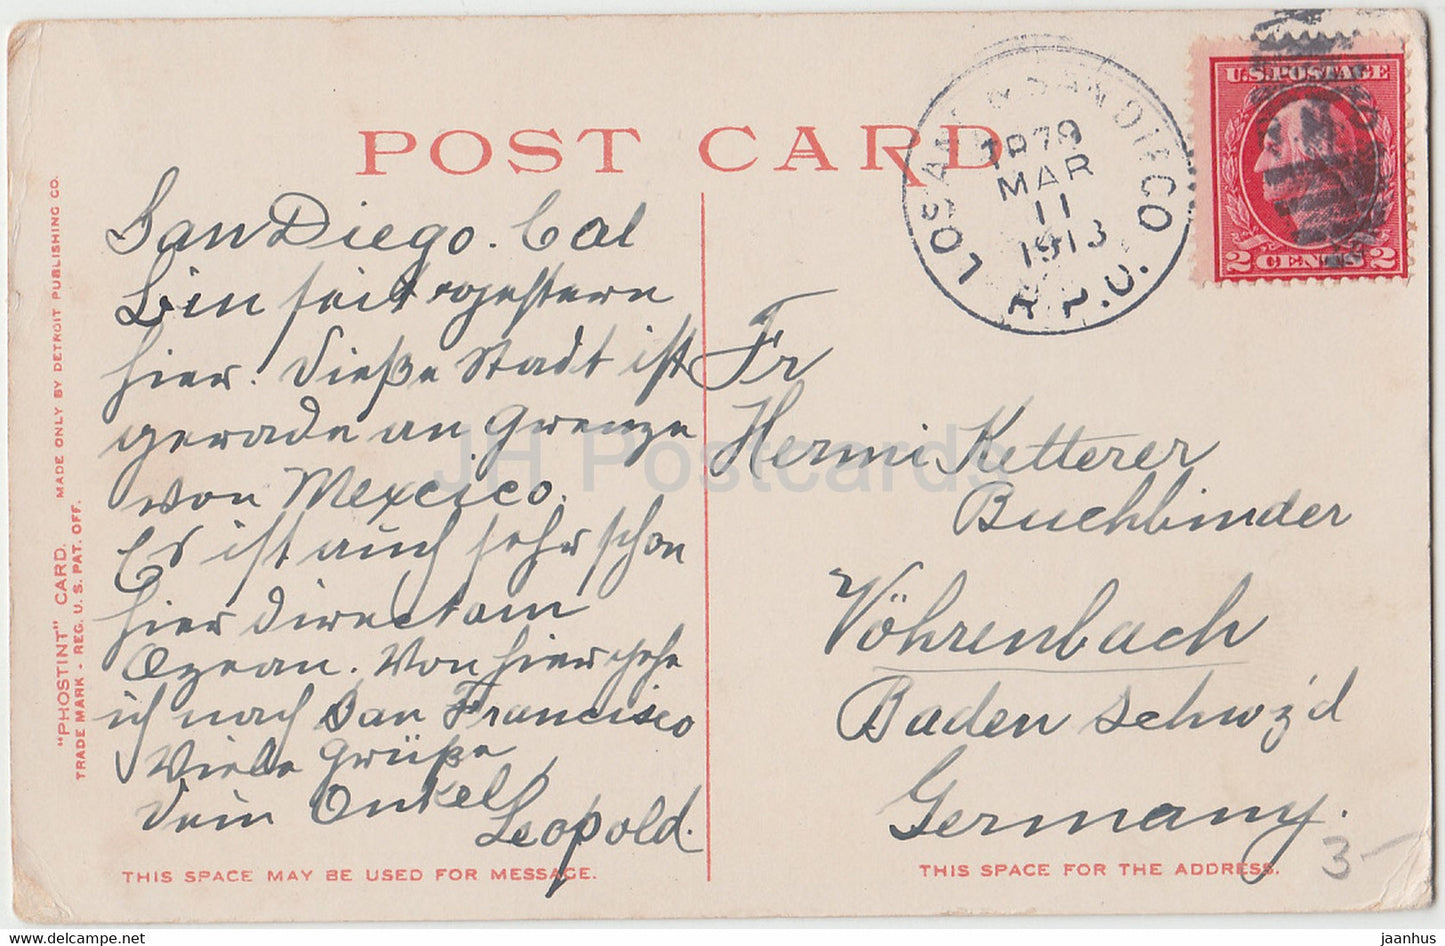 San Diego - Mission Heights Pavilion - Californie - 12785 - carte postale ancienne - 1913 - États-Unis USA - utilisé